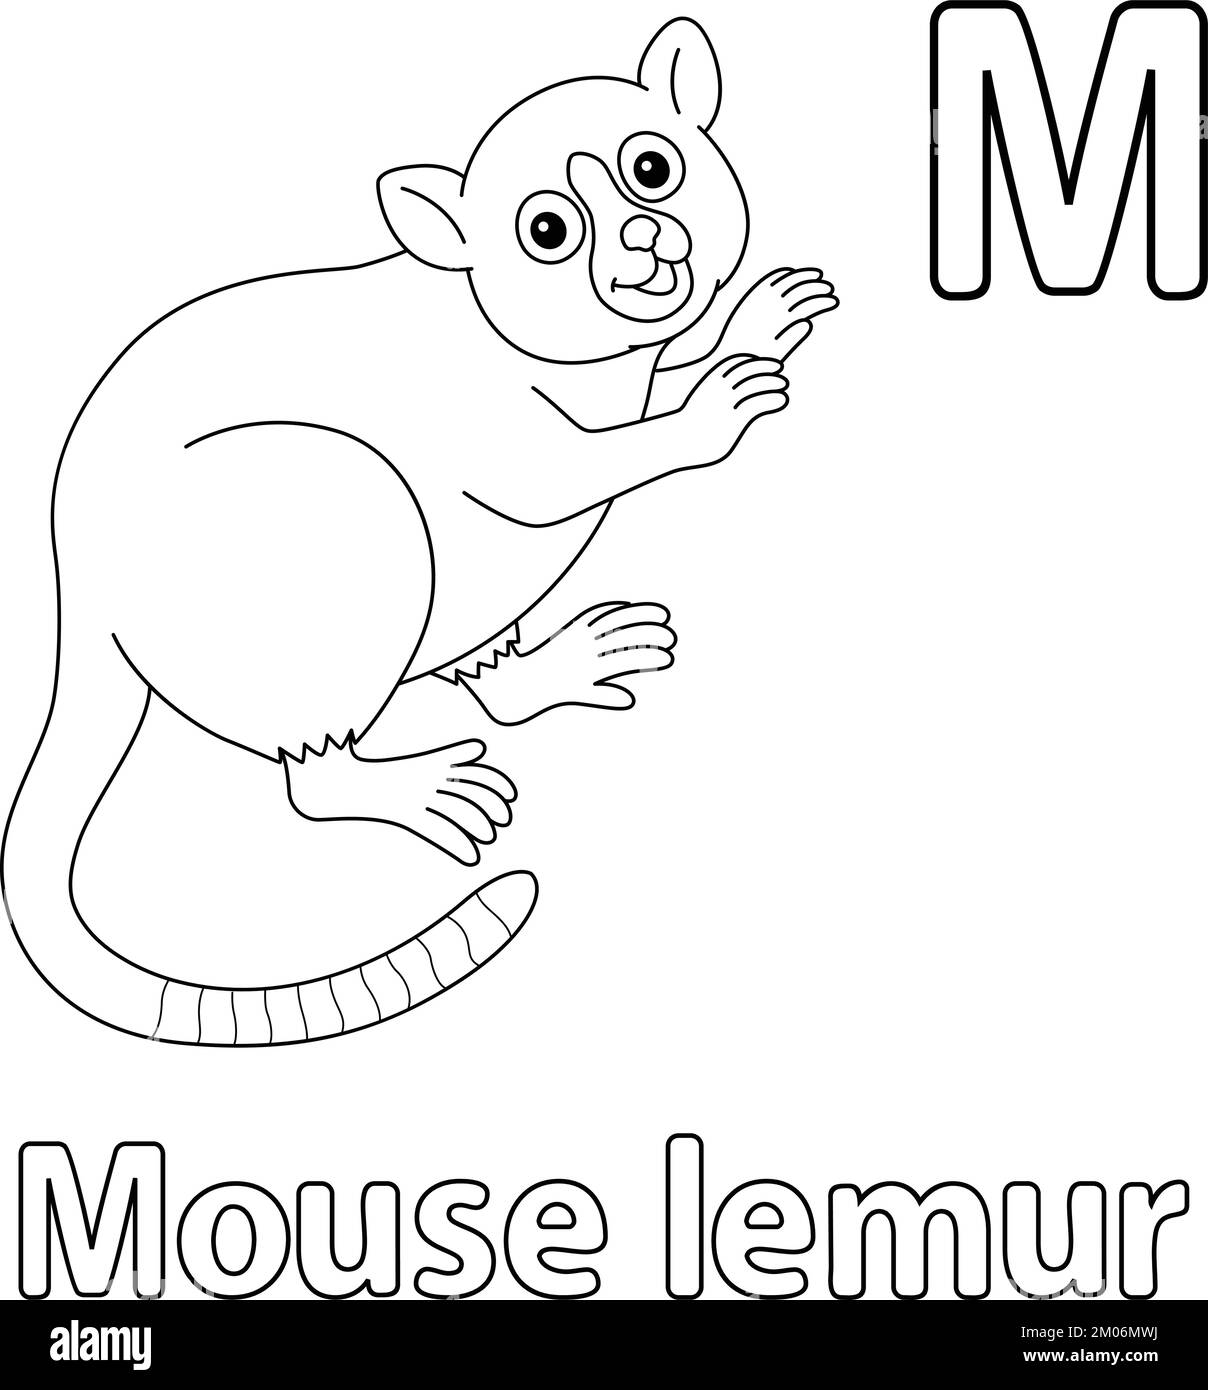 Souris Lemur Alphabet ABC coloration isolée page M Illustration de Vecteur